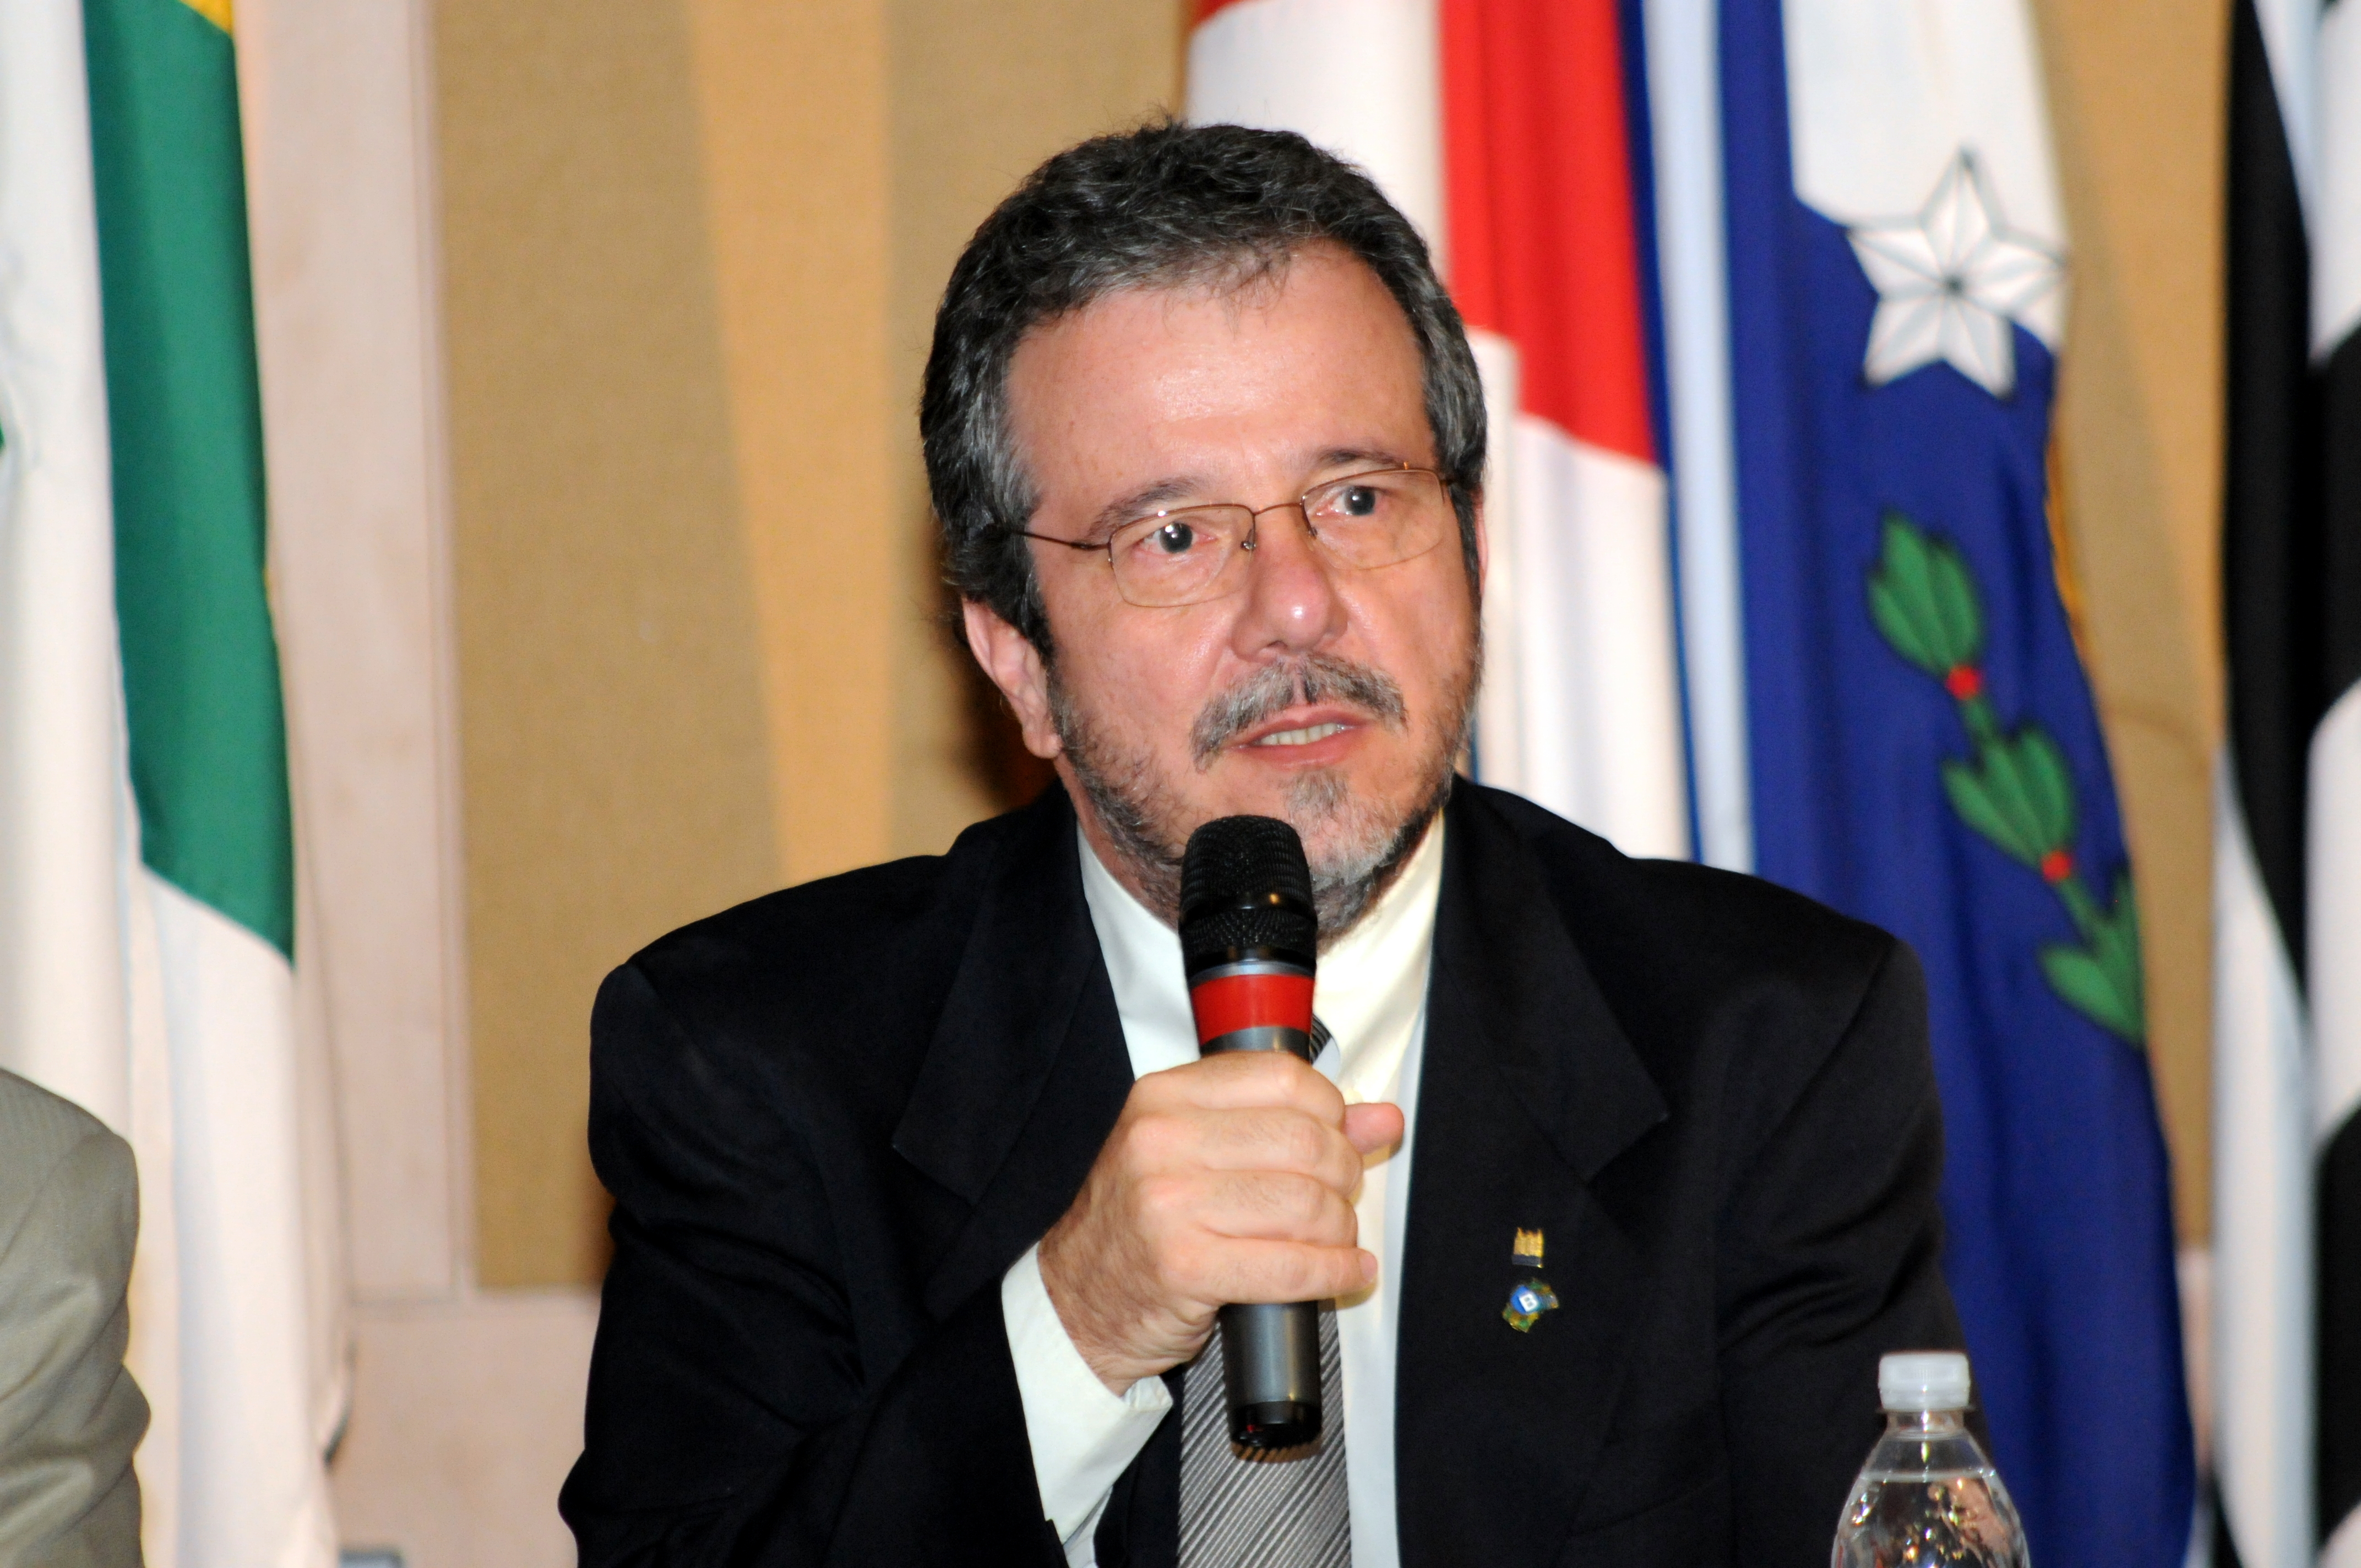 El Dr. João Aprigio Guerra de Almeida es el coordinador del Programa, y responsable de gran parte de su éxito.